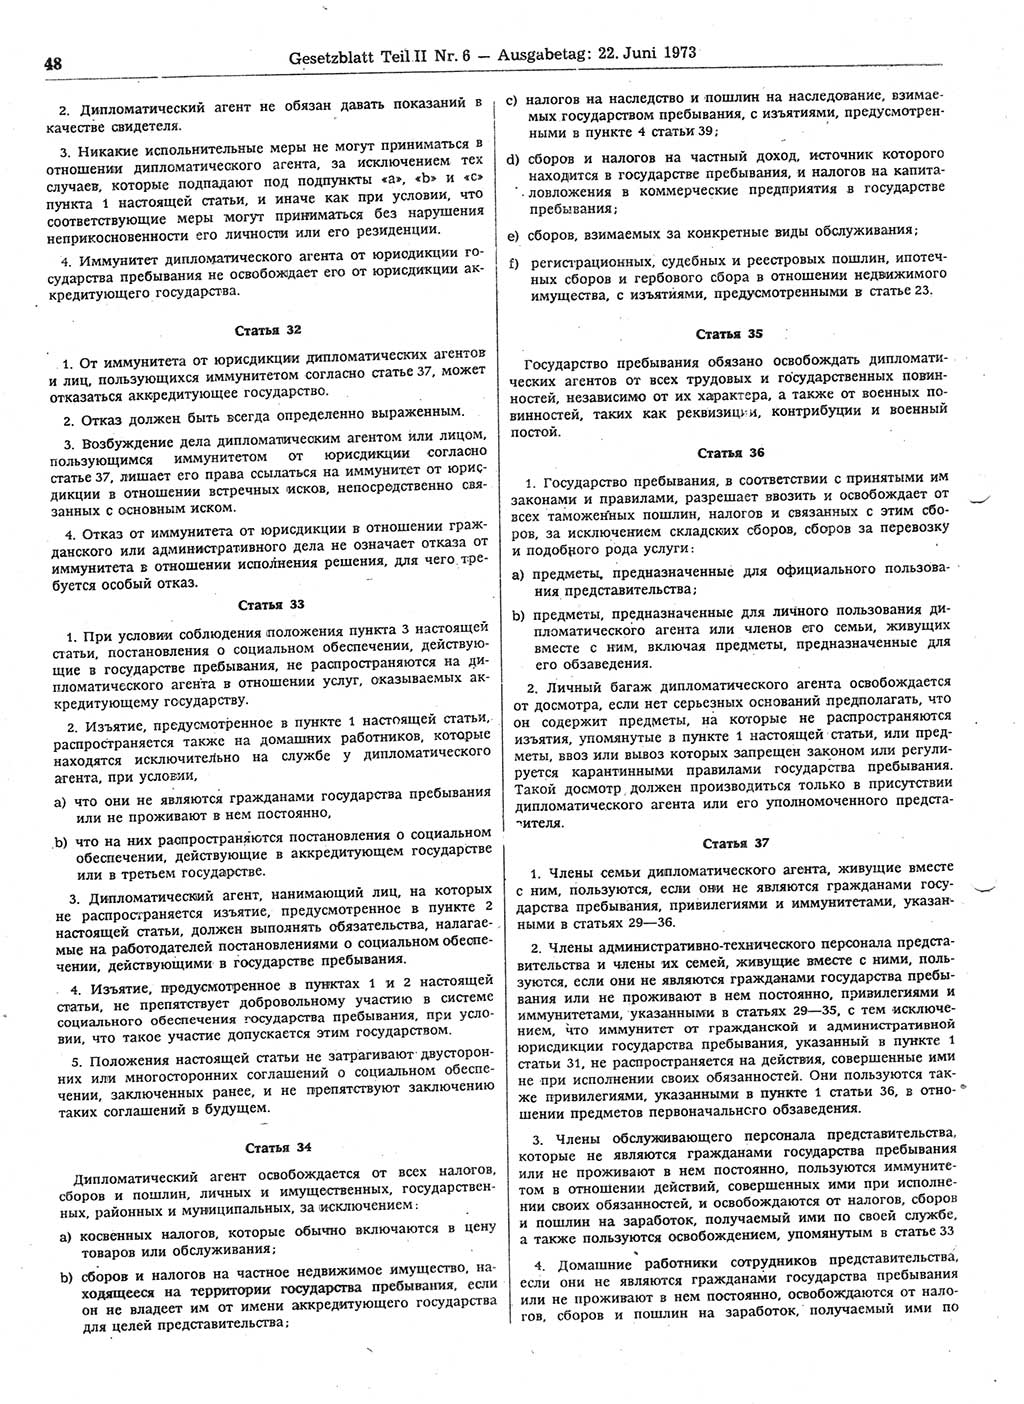 Gesetzblatt (GBl.) der Deutschen Demokratischen Republik (DDR) Teil ⅠⅠ 1973, Seite 48 (GBl. DDR ⅠⅠ 1973, S. 48)